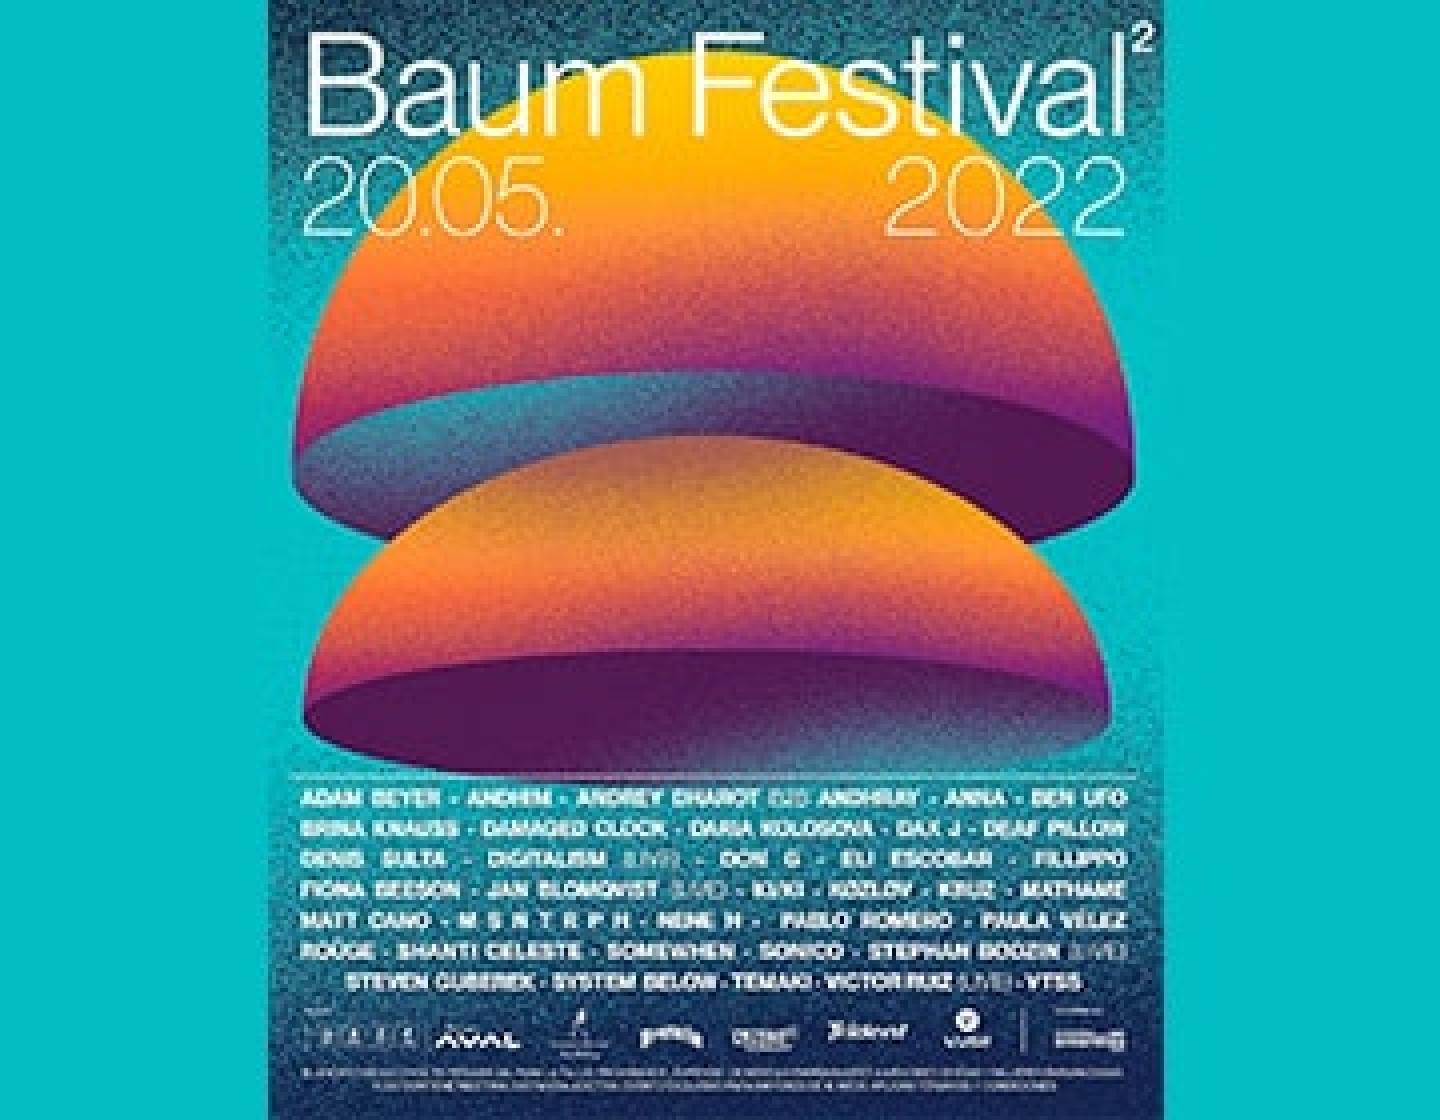 Habemus cartel Baum festival 20.05